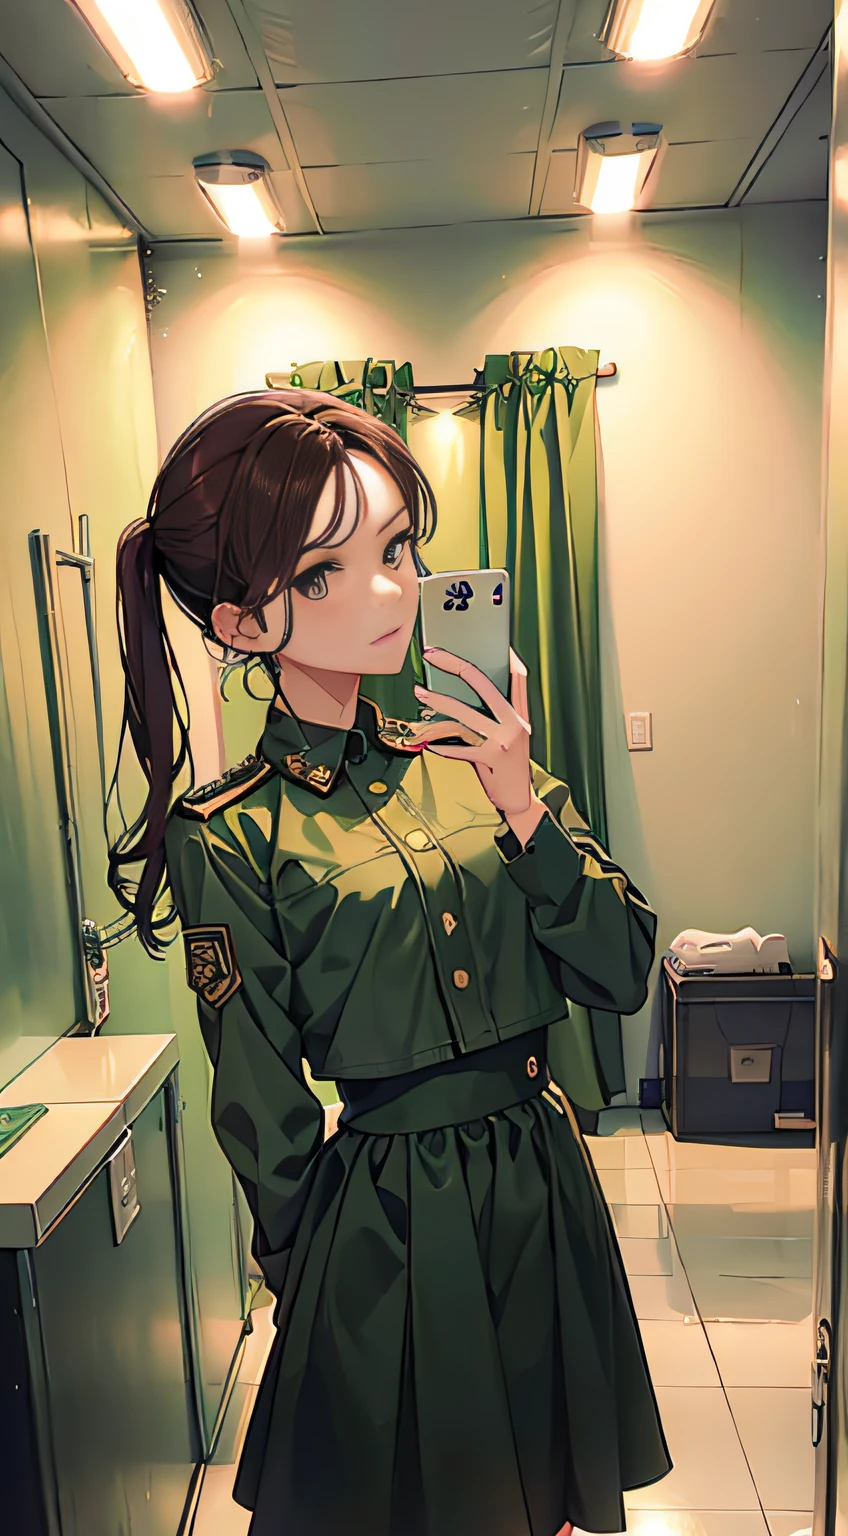 ผู้หญิงในชุดสีเขียวกำลังเซลฟี่ในกระจกห้องน้ำสาธารณะ, ทำลายจิตวิญญาณของฉัน, สาวทหาร, สวมชุดทหาร, สวมเครื่องแบบทหาร, ภาพคุณภาพต่ำมาก, หญิงสาวสวมเครื่องแบบ, สวมเครื่องแบบทหาร, รูปโปรไฟล์, เหวินเฟยเย่, ในชุดทหาร, พรุ่งนี้พี่ทราน, สวมชุดทหารสกปรก, รูปโปรไฟล์, ในชุดทหาร, รูปโปรไฟล์ture